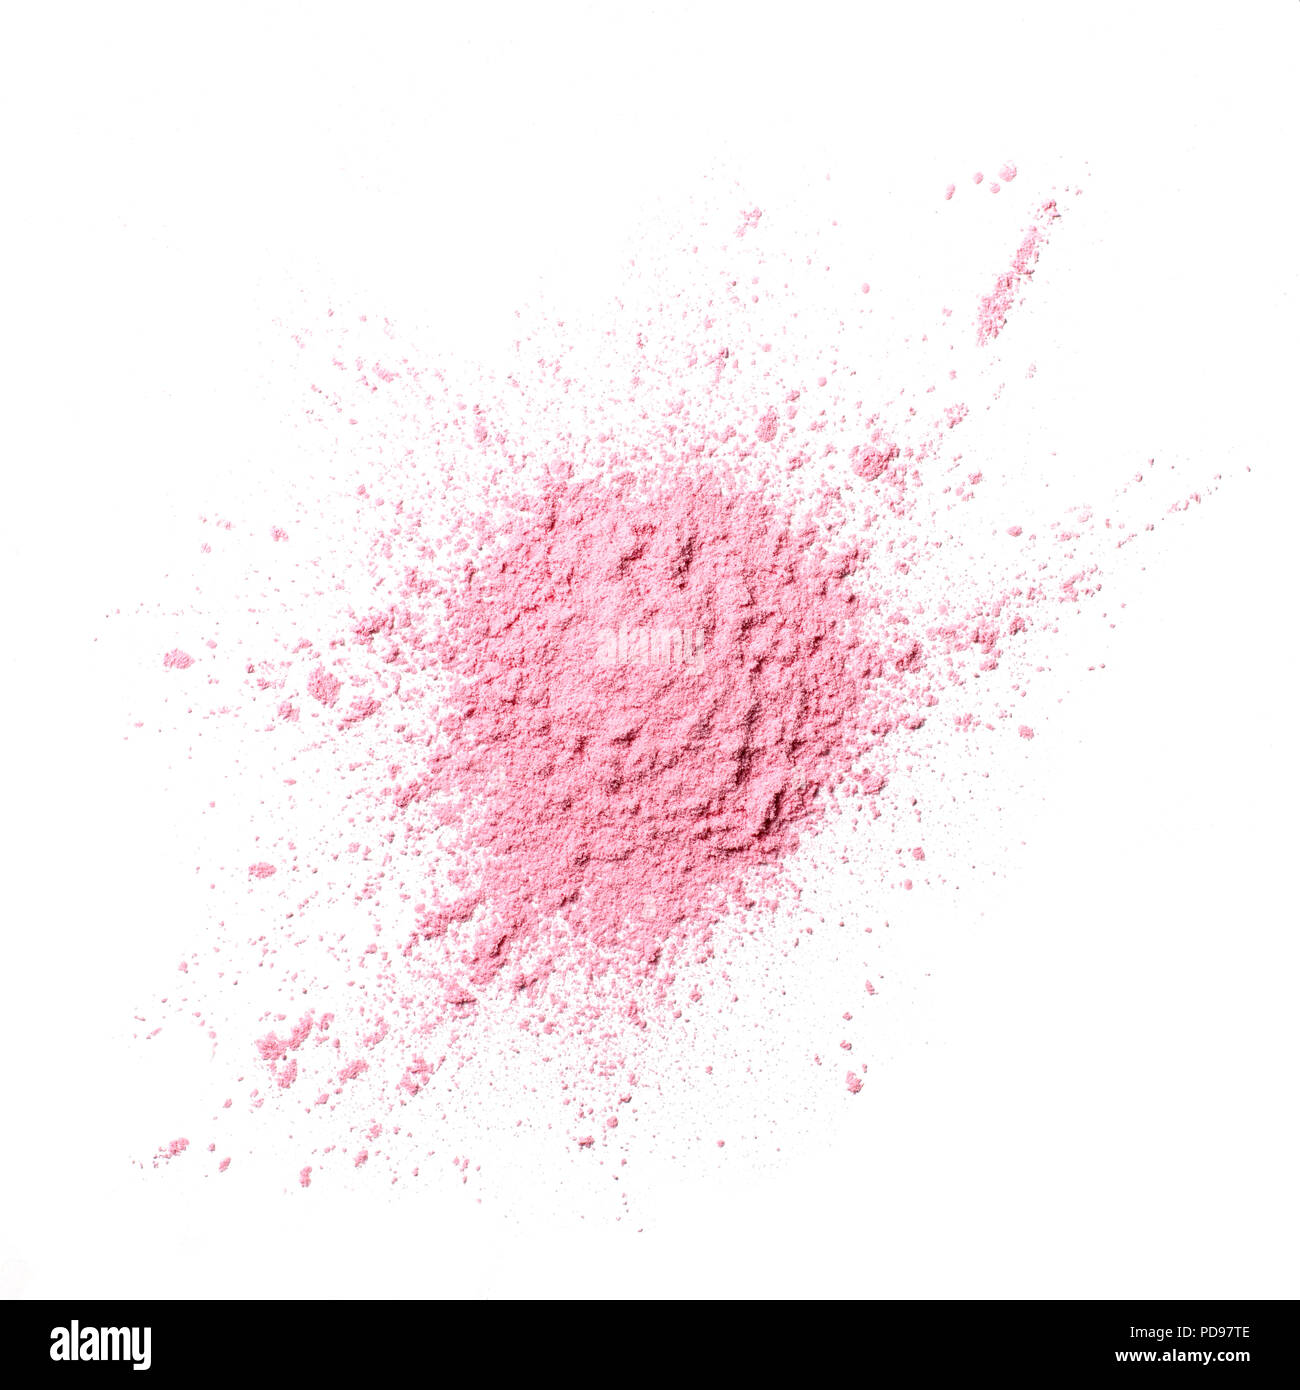 Pink powder splat Stock Photo